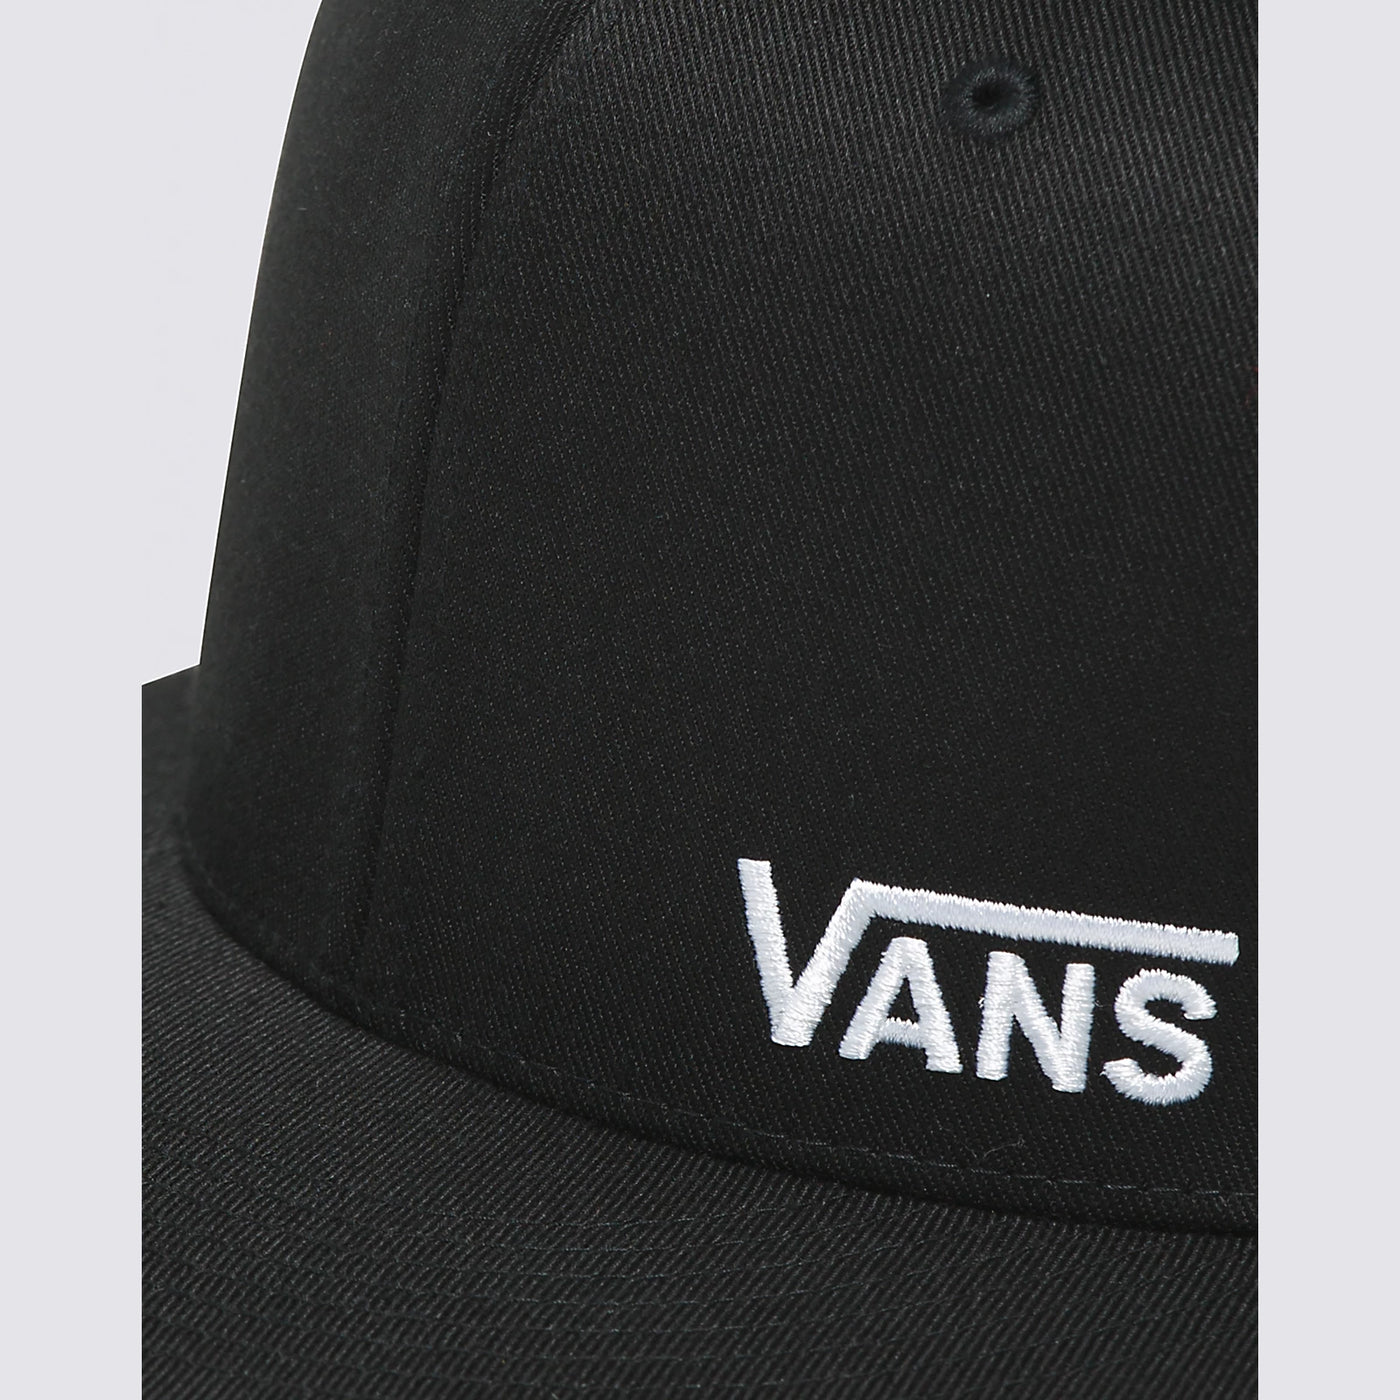 Vans SPLITZ FLEXFIT CAP - Black